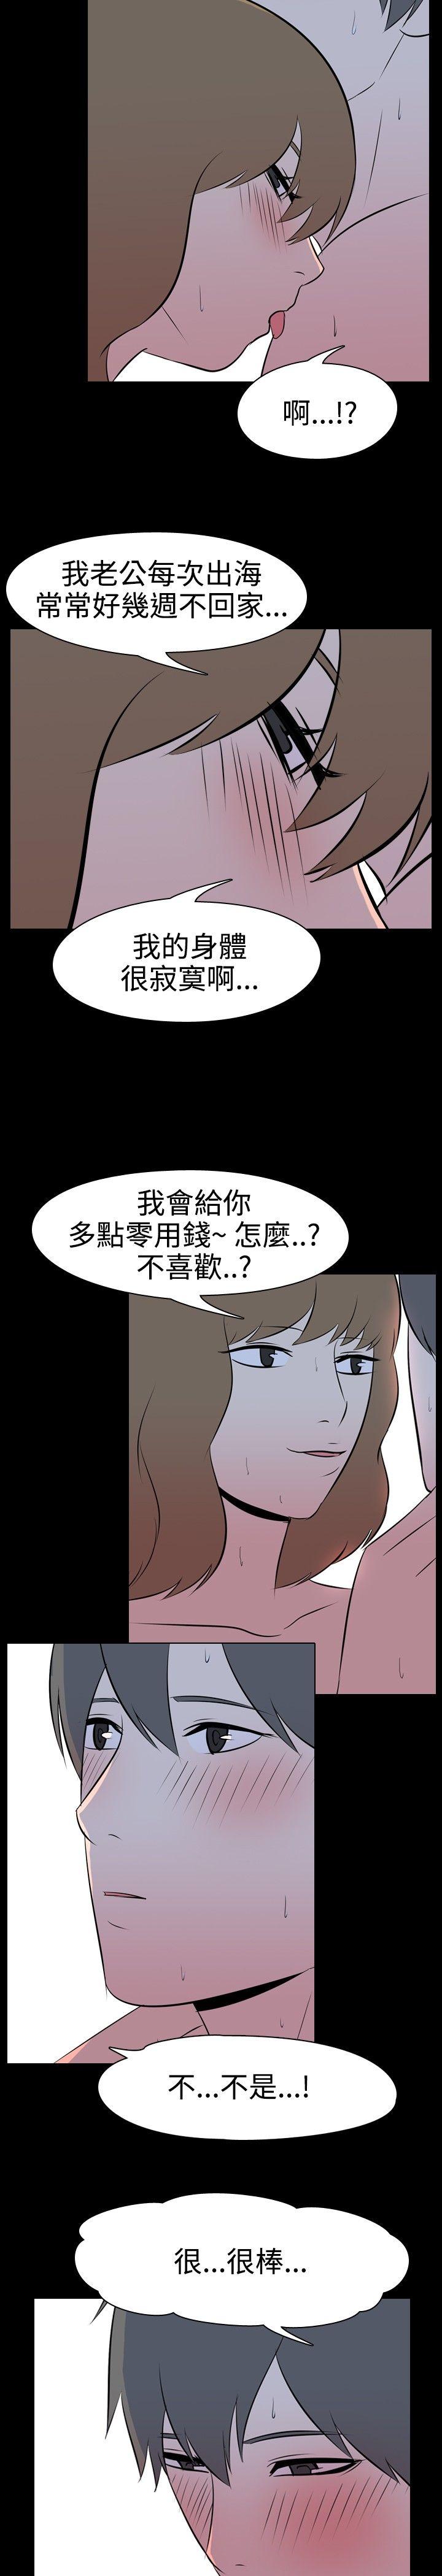 韩国污漫画 我的色色夜說 第38话-赚外快(中) 4